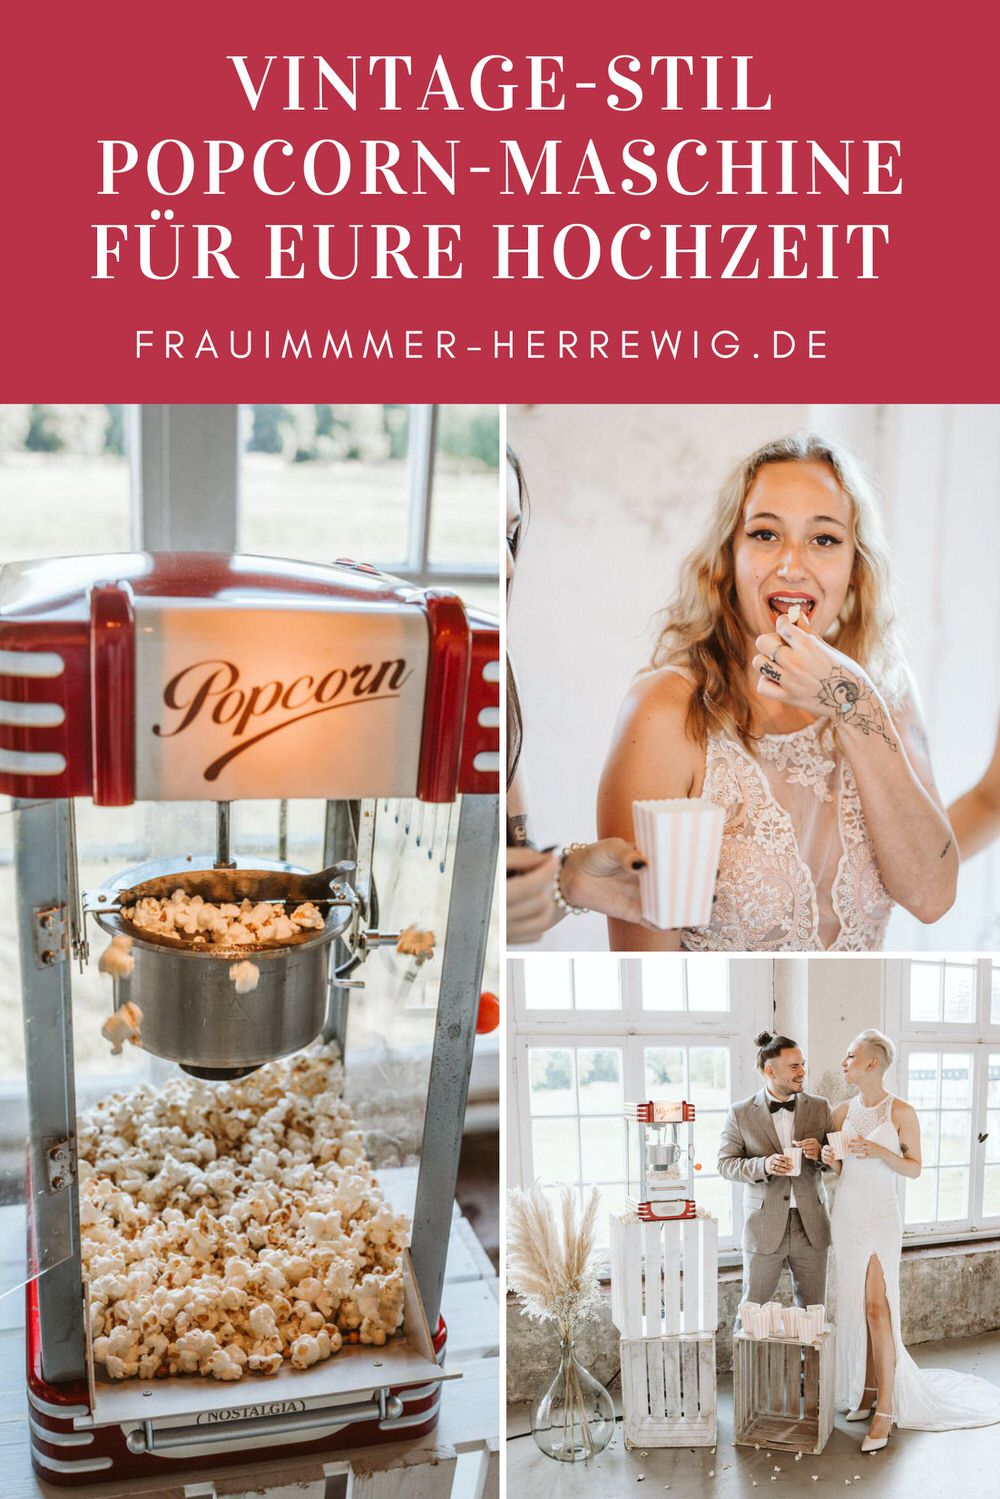 Hochzeit popcorn maschine mieten – gesehen bei frauimmer-herrewig.de